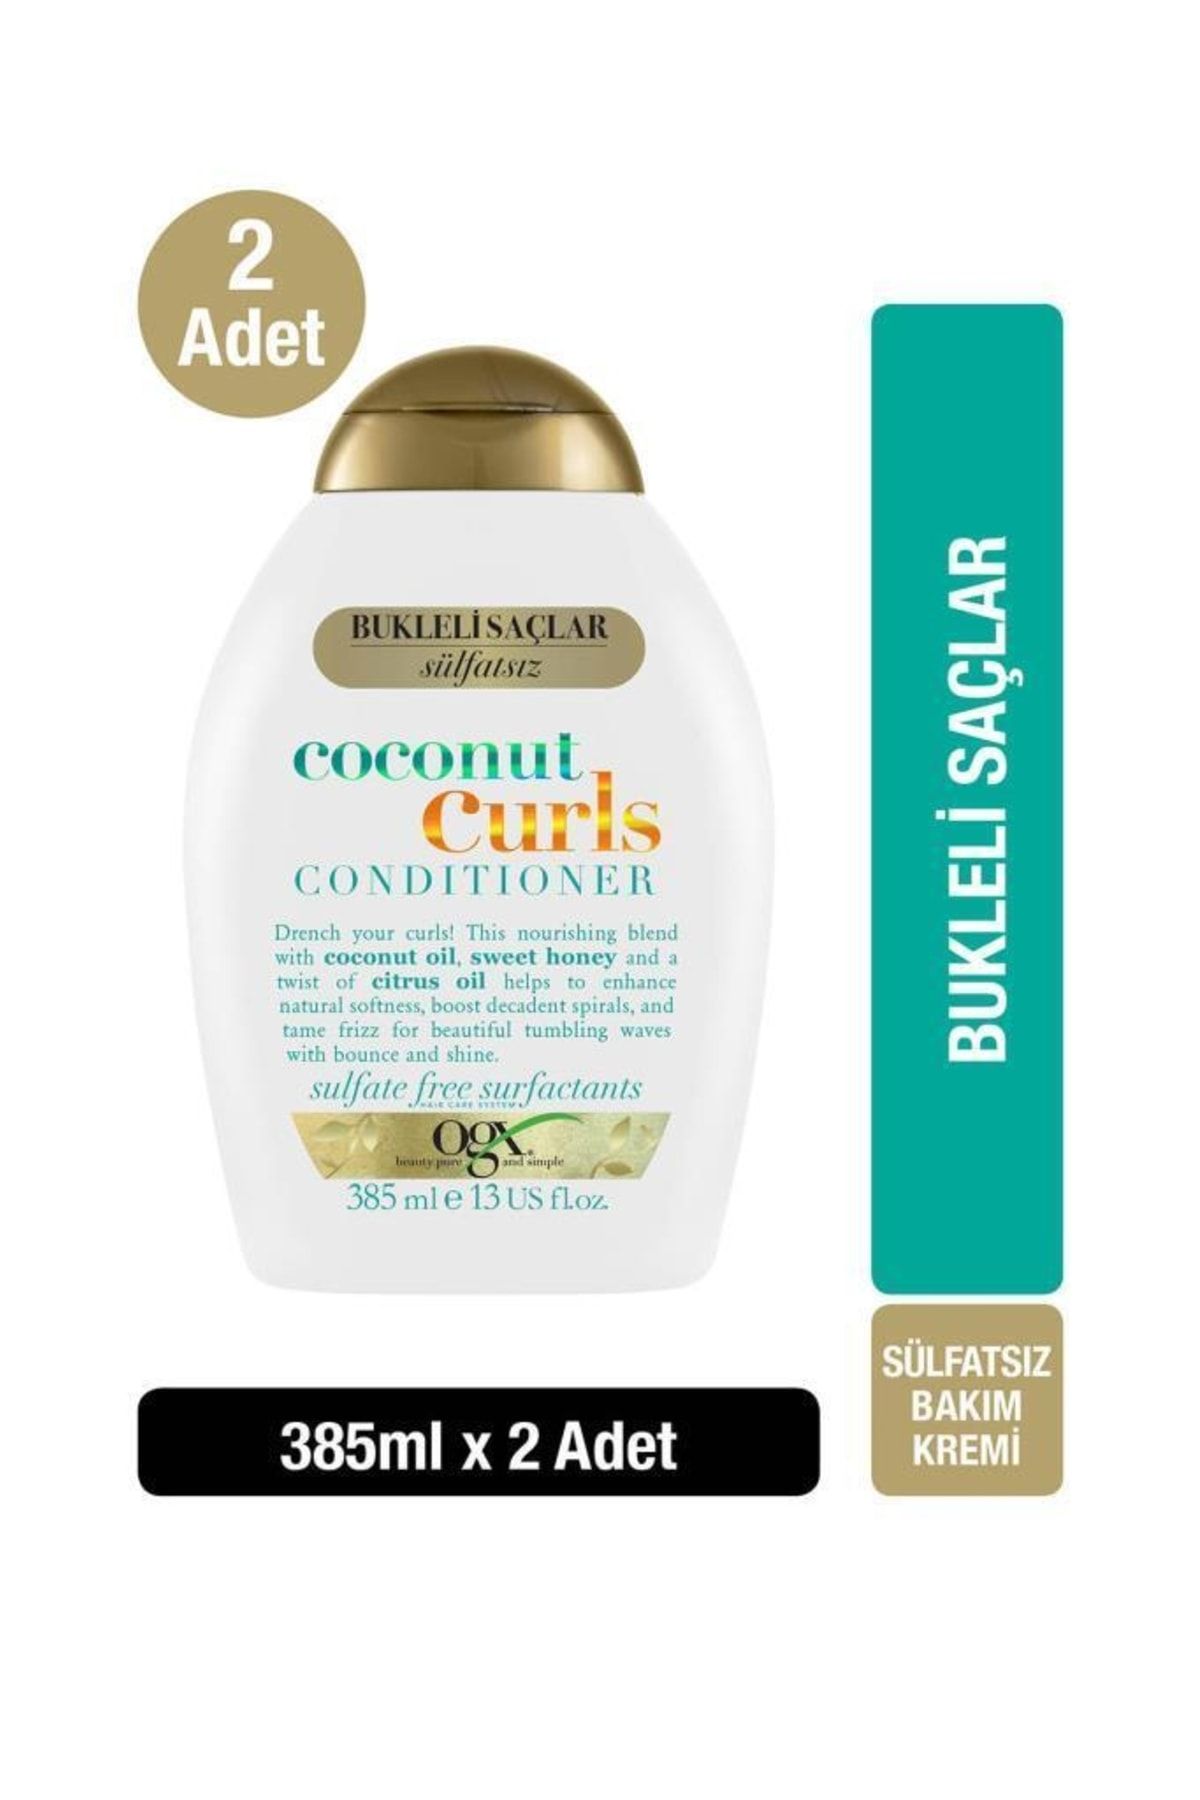 OGX Coconut Curls Bukleli Saçlar Için Sülfatsız Saç Bakım Kremi 385 ml X 2 Adet